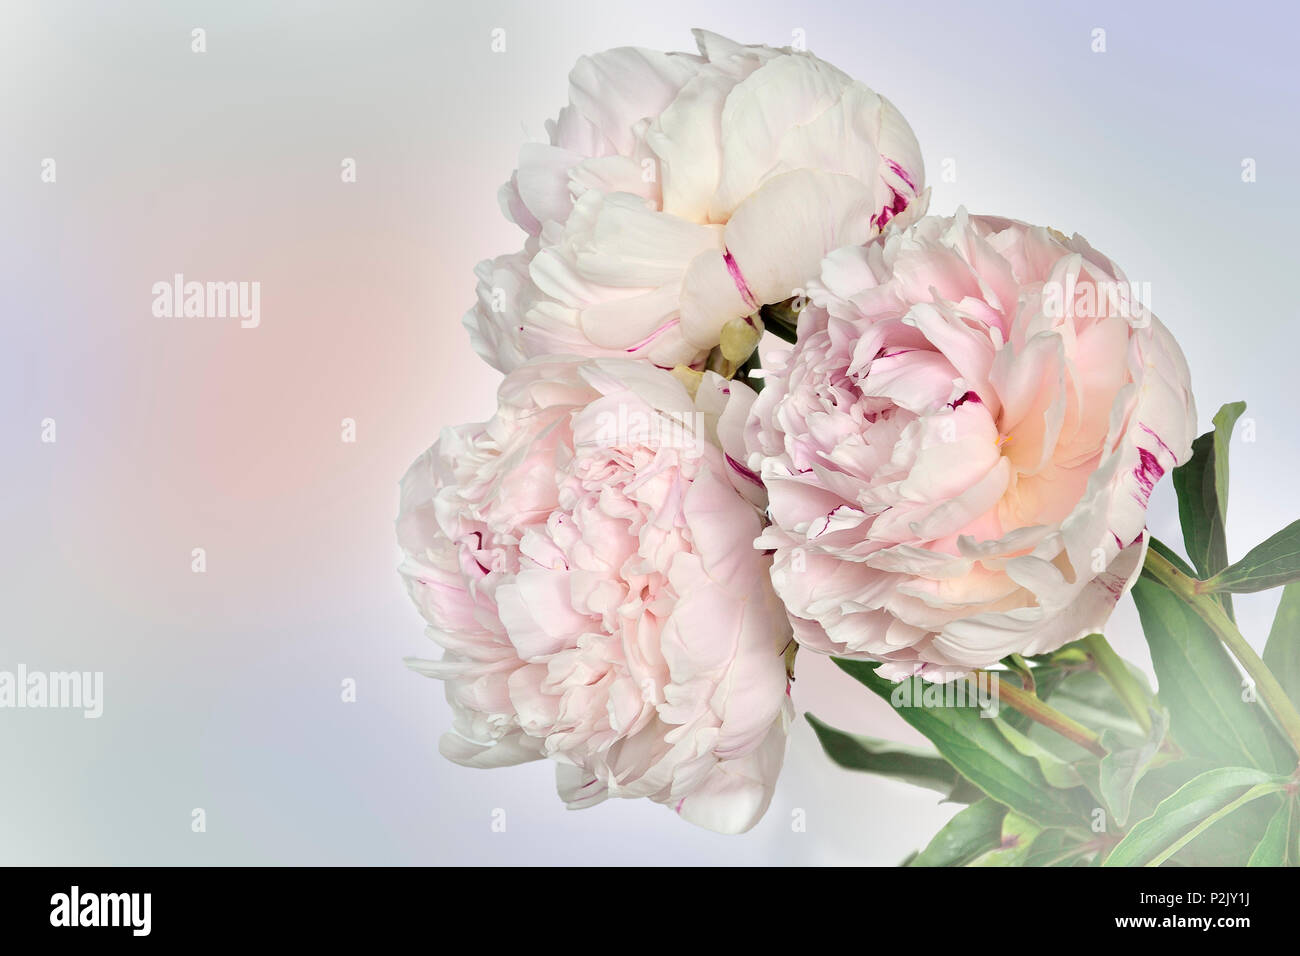 Schönen Blumenstrauß von sanften weiß-rosa Pfingstrosen auf weichen hellen Pastelltönen Hintergrund mit Platz für Text. Konzept der romantischen Liebe Stockfoto